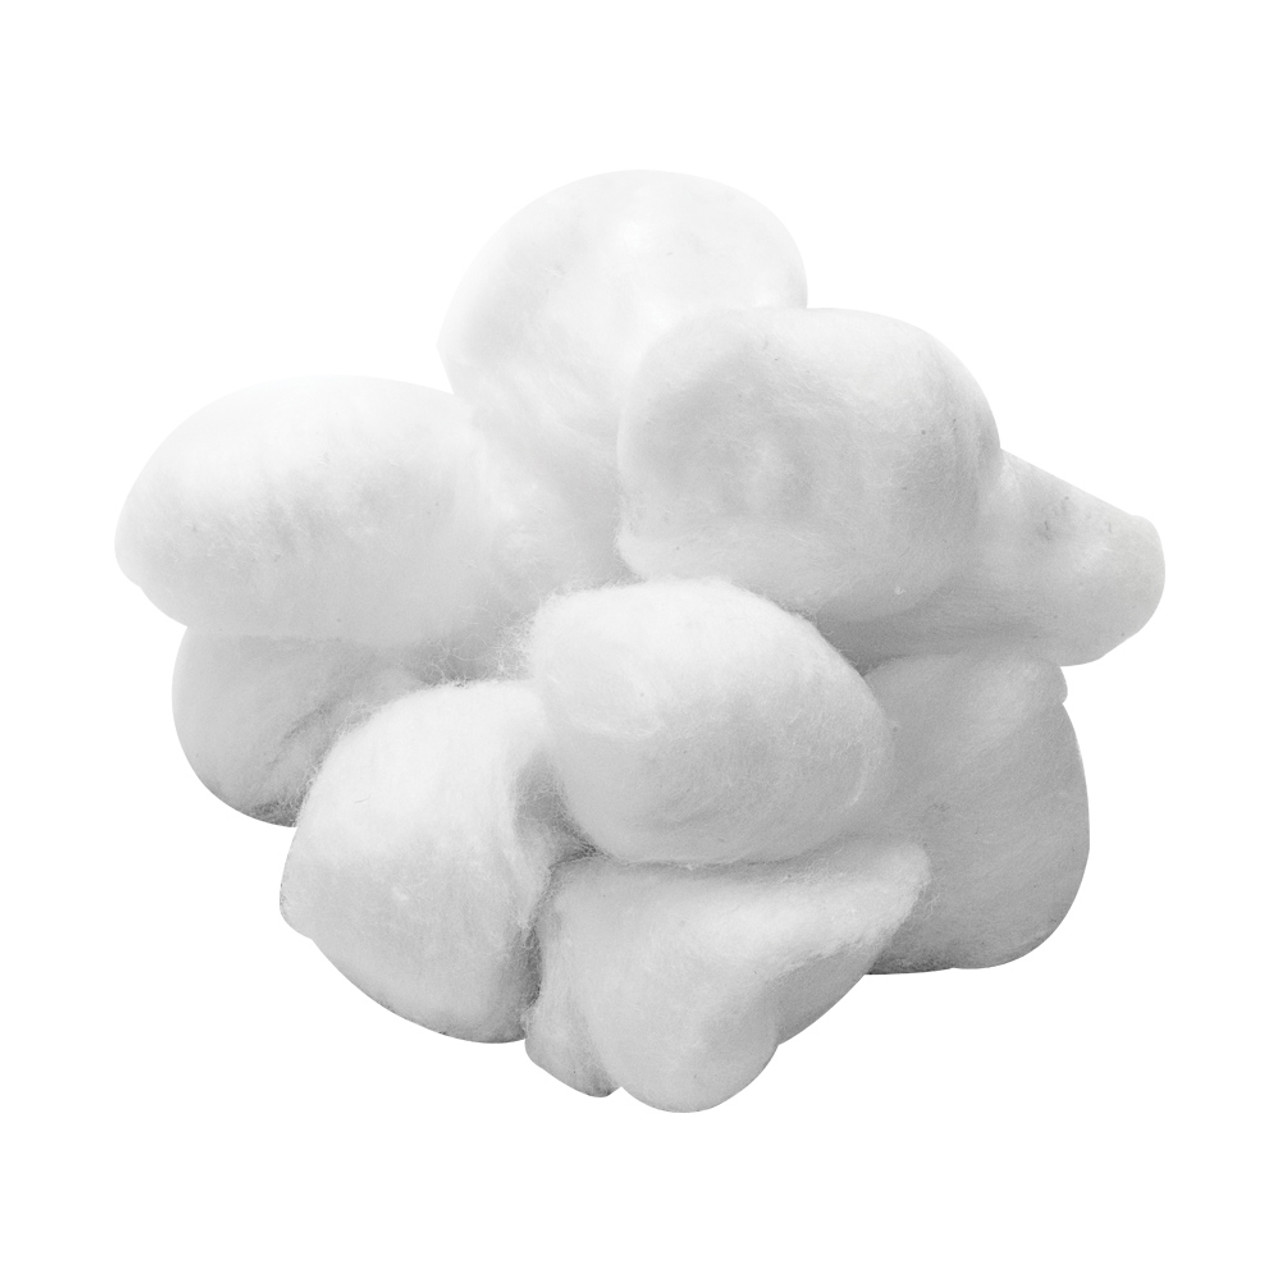 Ant Cotton Bundle - XL Cotton Balls / Small Cotton Balls / Q-Tips